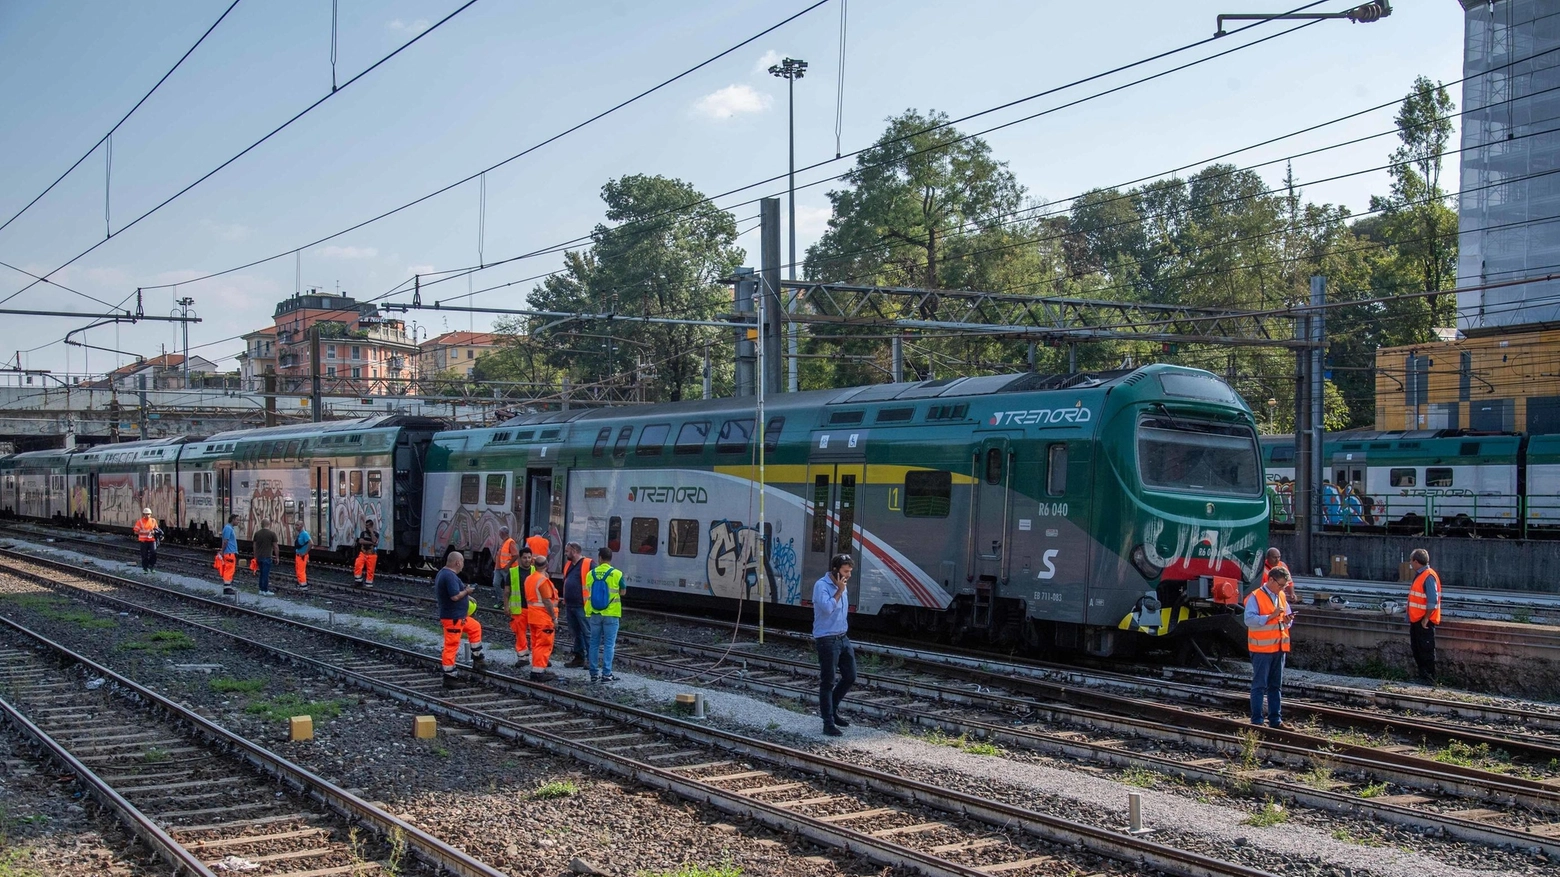 Un treno R6040 è uscito dalle rotaie a Milano Cadorna, ma fortunatamente senza feriti. La circolazione è stata interrotta per le verifiche, ma è ripresa con ritardi medi di 20 minuti. Aggiornamenti su sito e App Trenord.